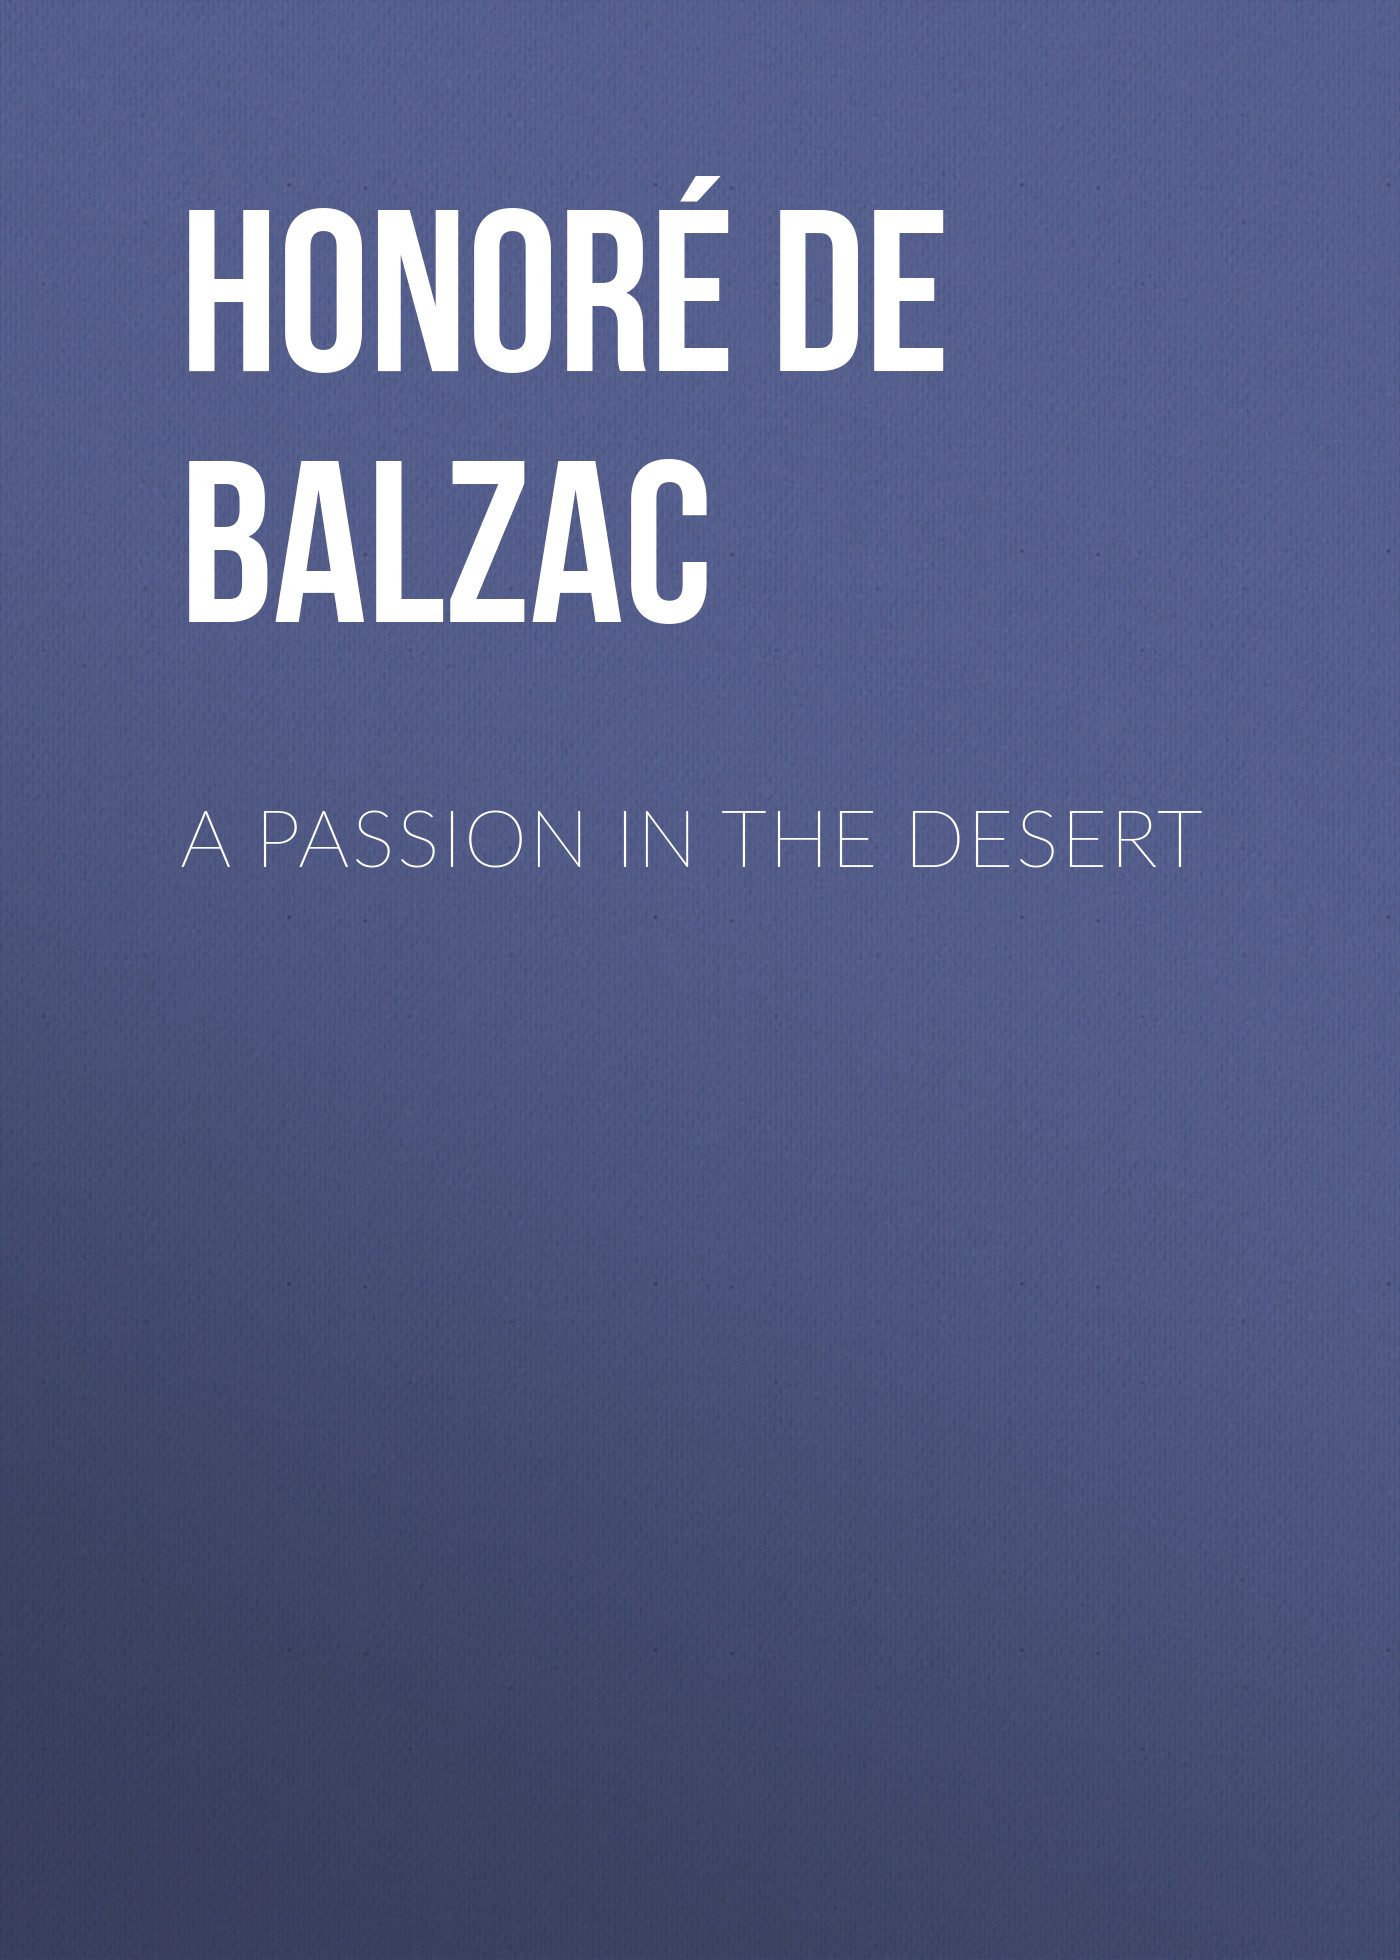 Книга A Passion in the Desert из серии , созданная Honoré Balzac, может относится к жанру Литература 19 века, Зарубежная старинная литература, Зарубежная классика. Стоимость электронной книги A Passion in the Desert с идентификатором 25021139 составляет 0 руб.